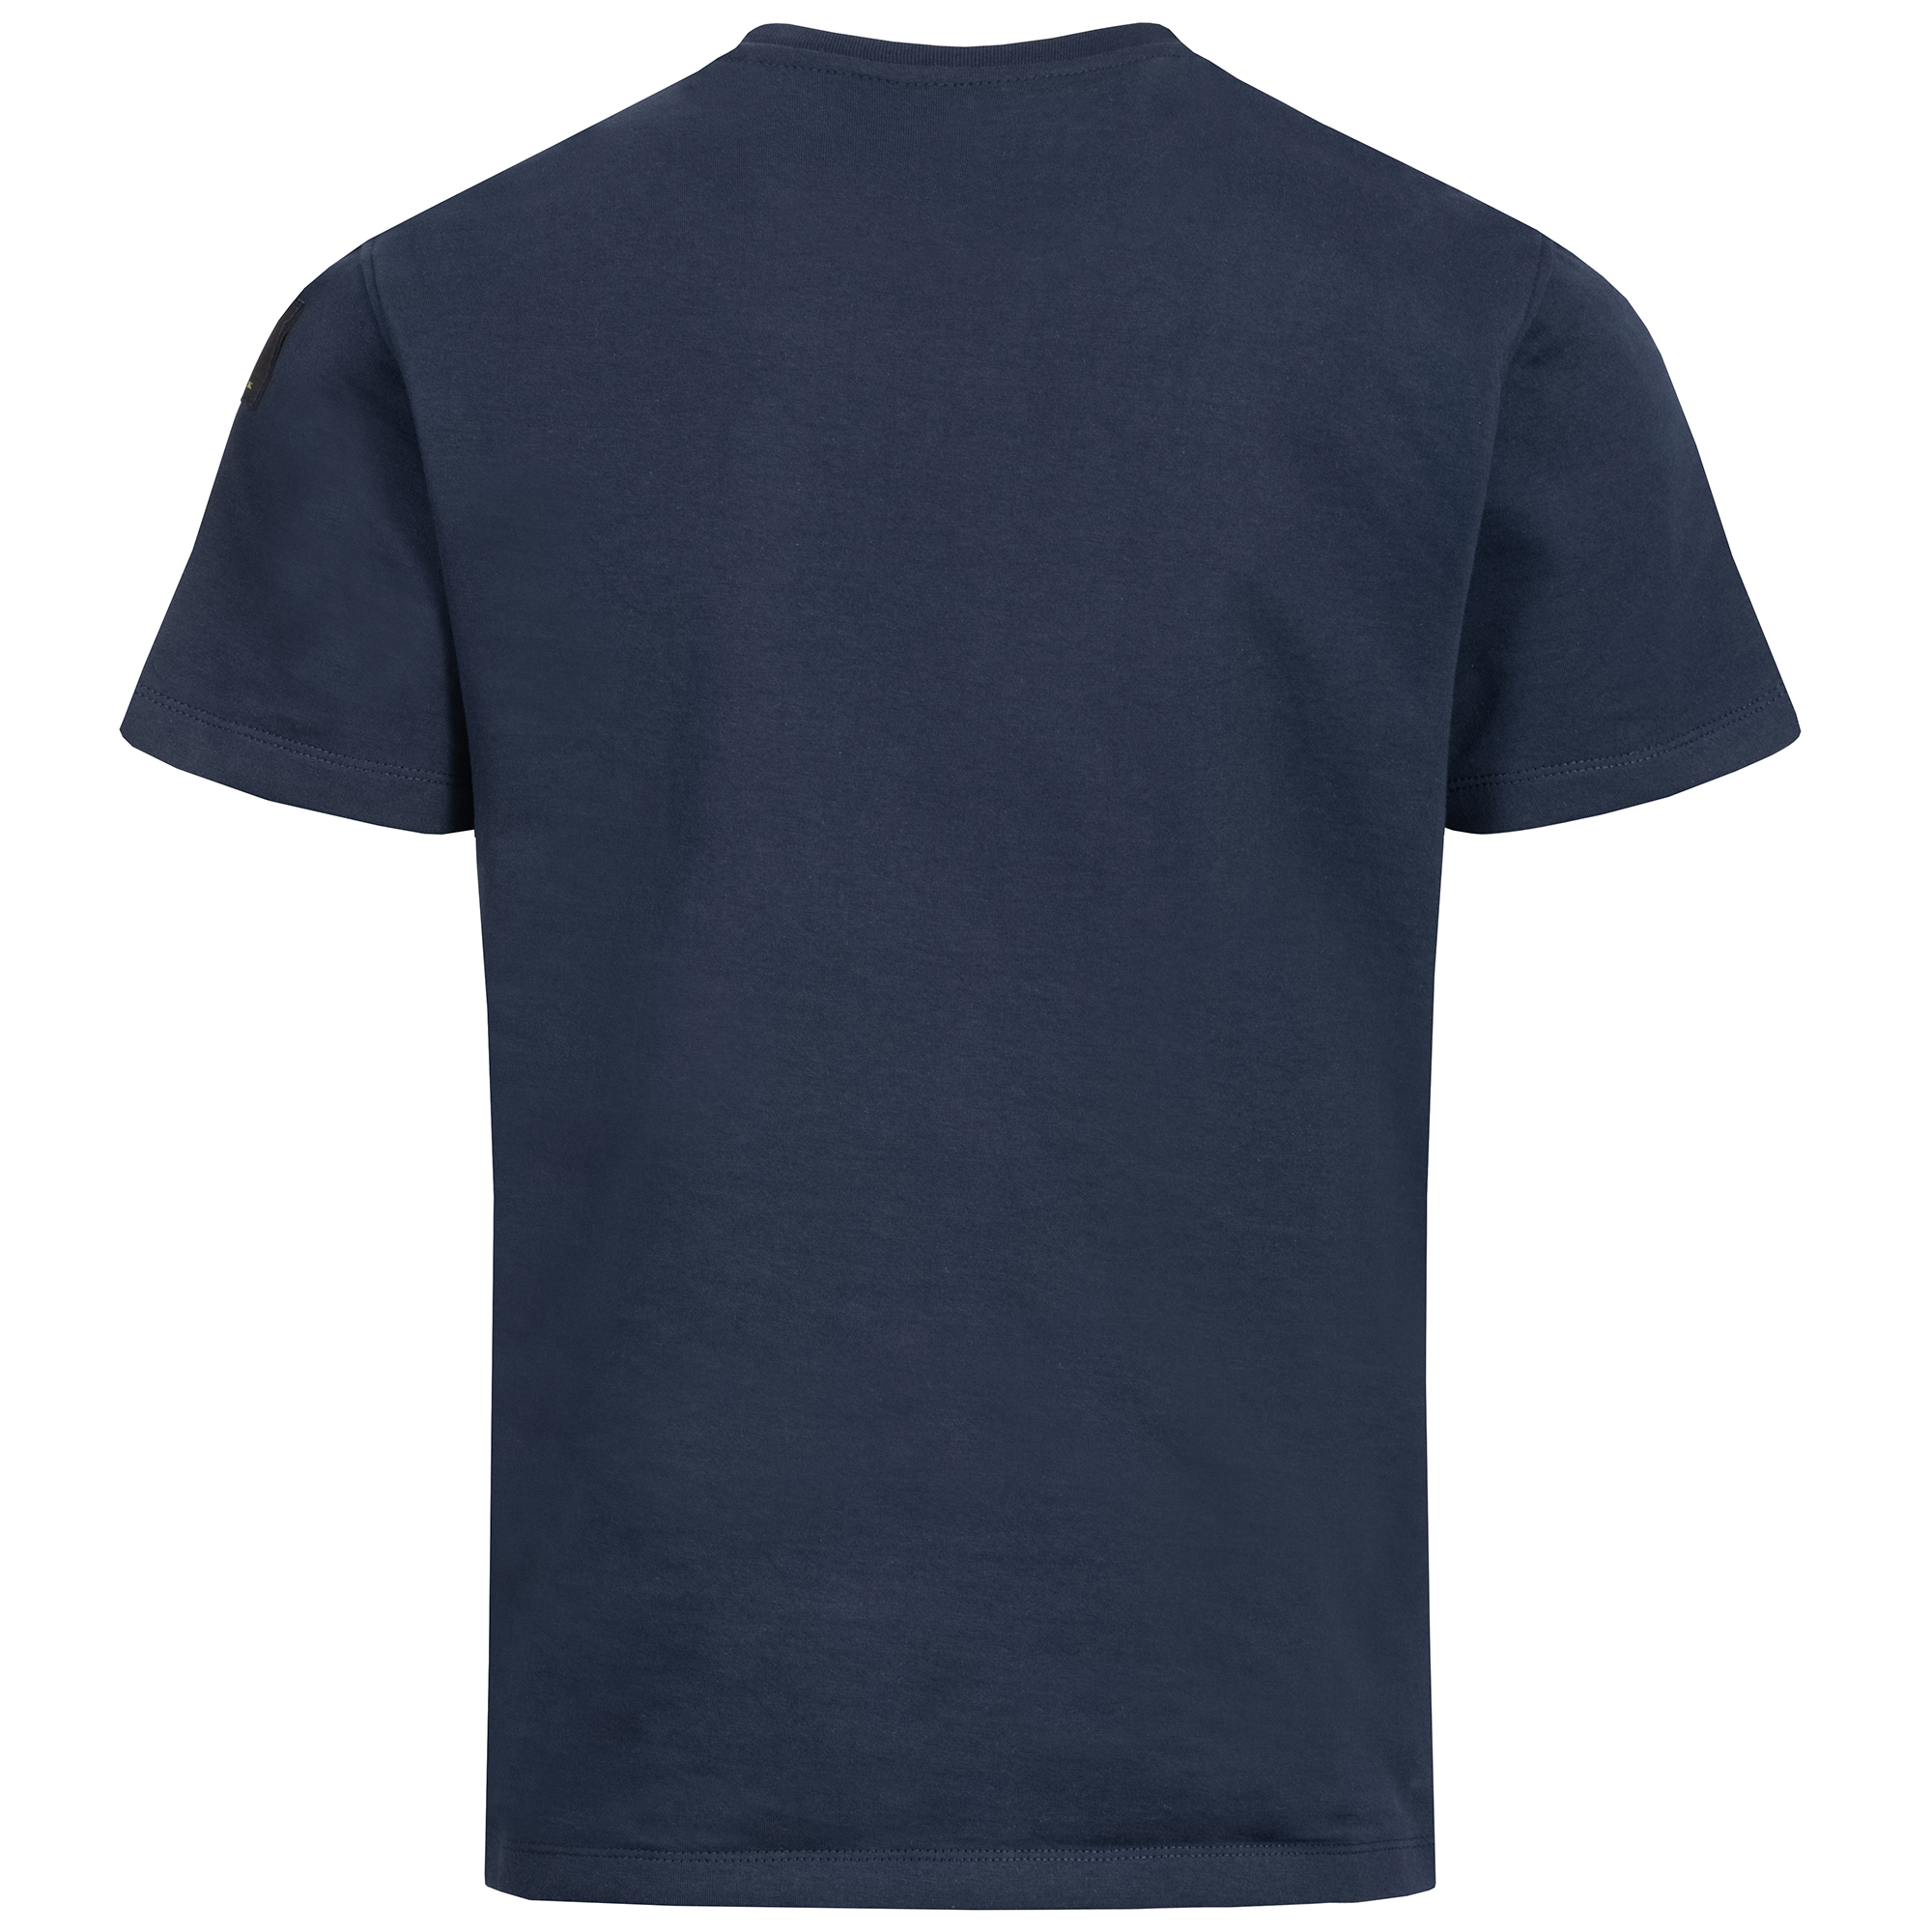 Schnittschutz-T-Shirt Level 5 sehr hoher Schutz Groessen 3XL 7XL vorhanden 